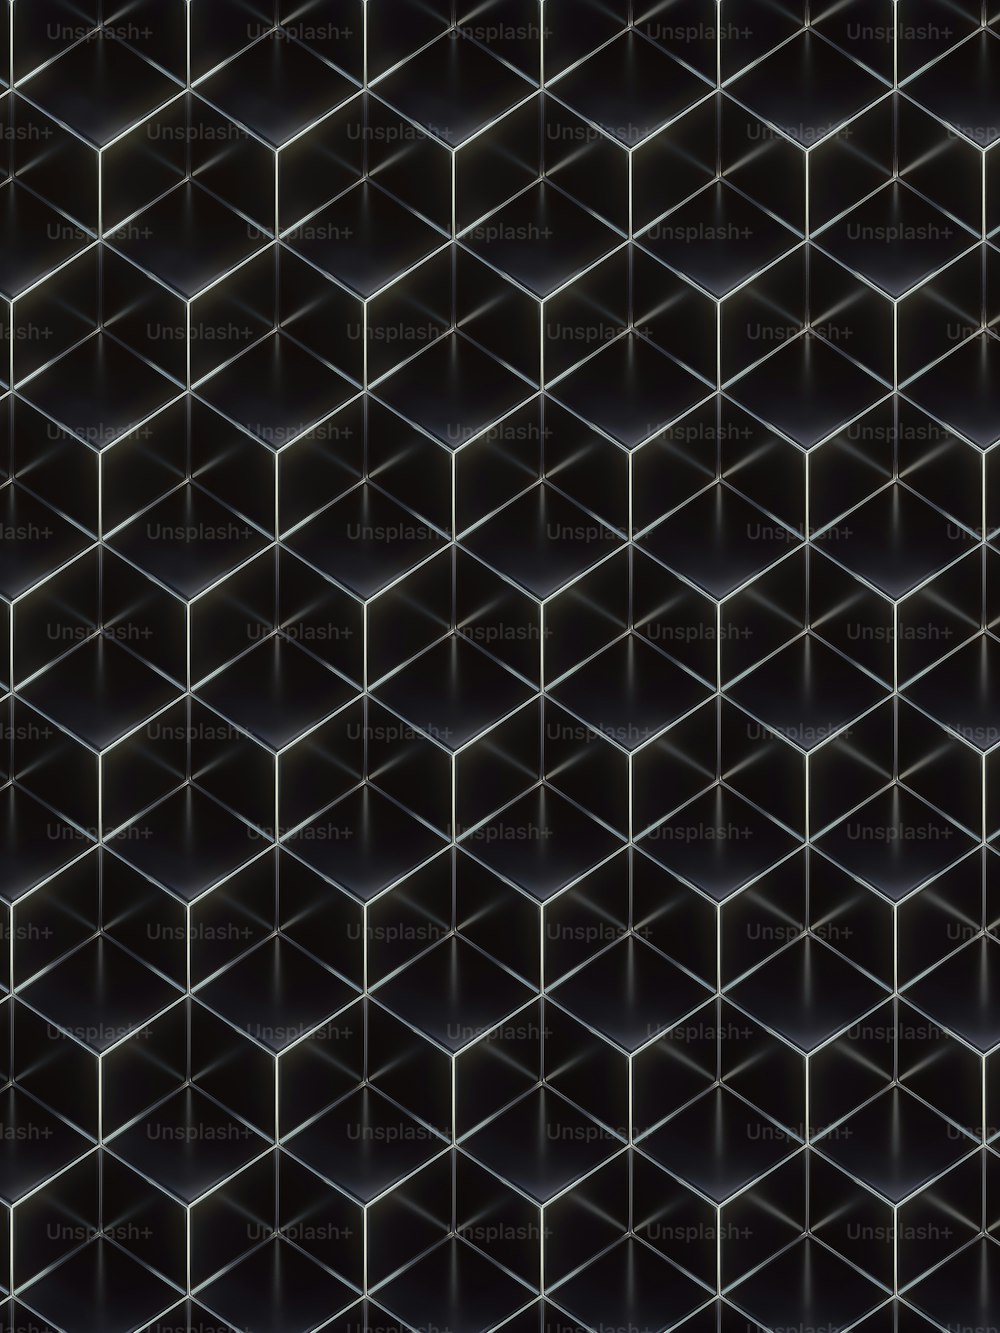 銀線と光沢のある黒の豪華な立方体の幾何学模様。抽象的な概念の背景。装飾的でエレガントな高級デザイン。アイソメ図法。3Dレンダリングデジタルイラストレーション